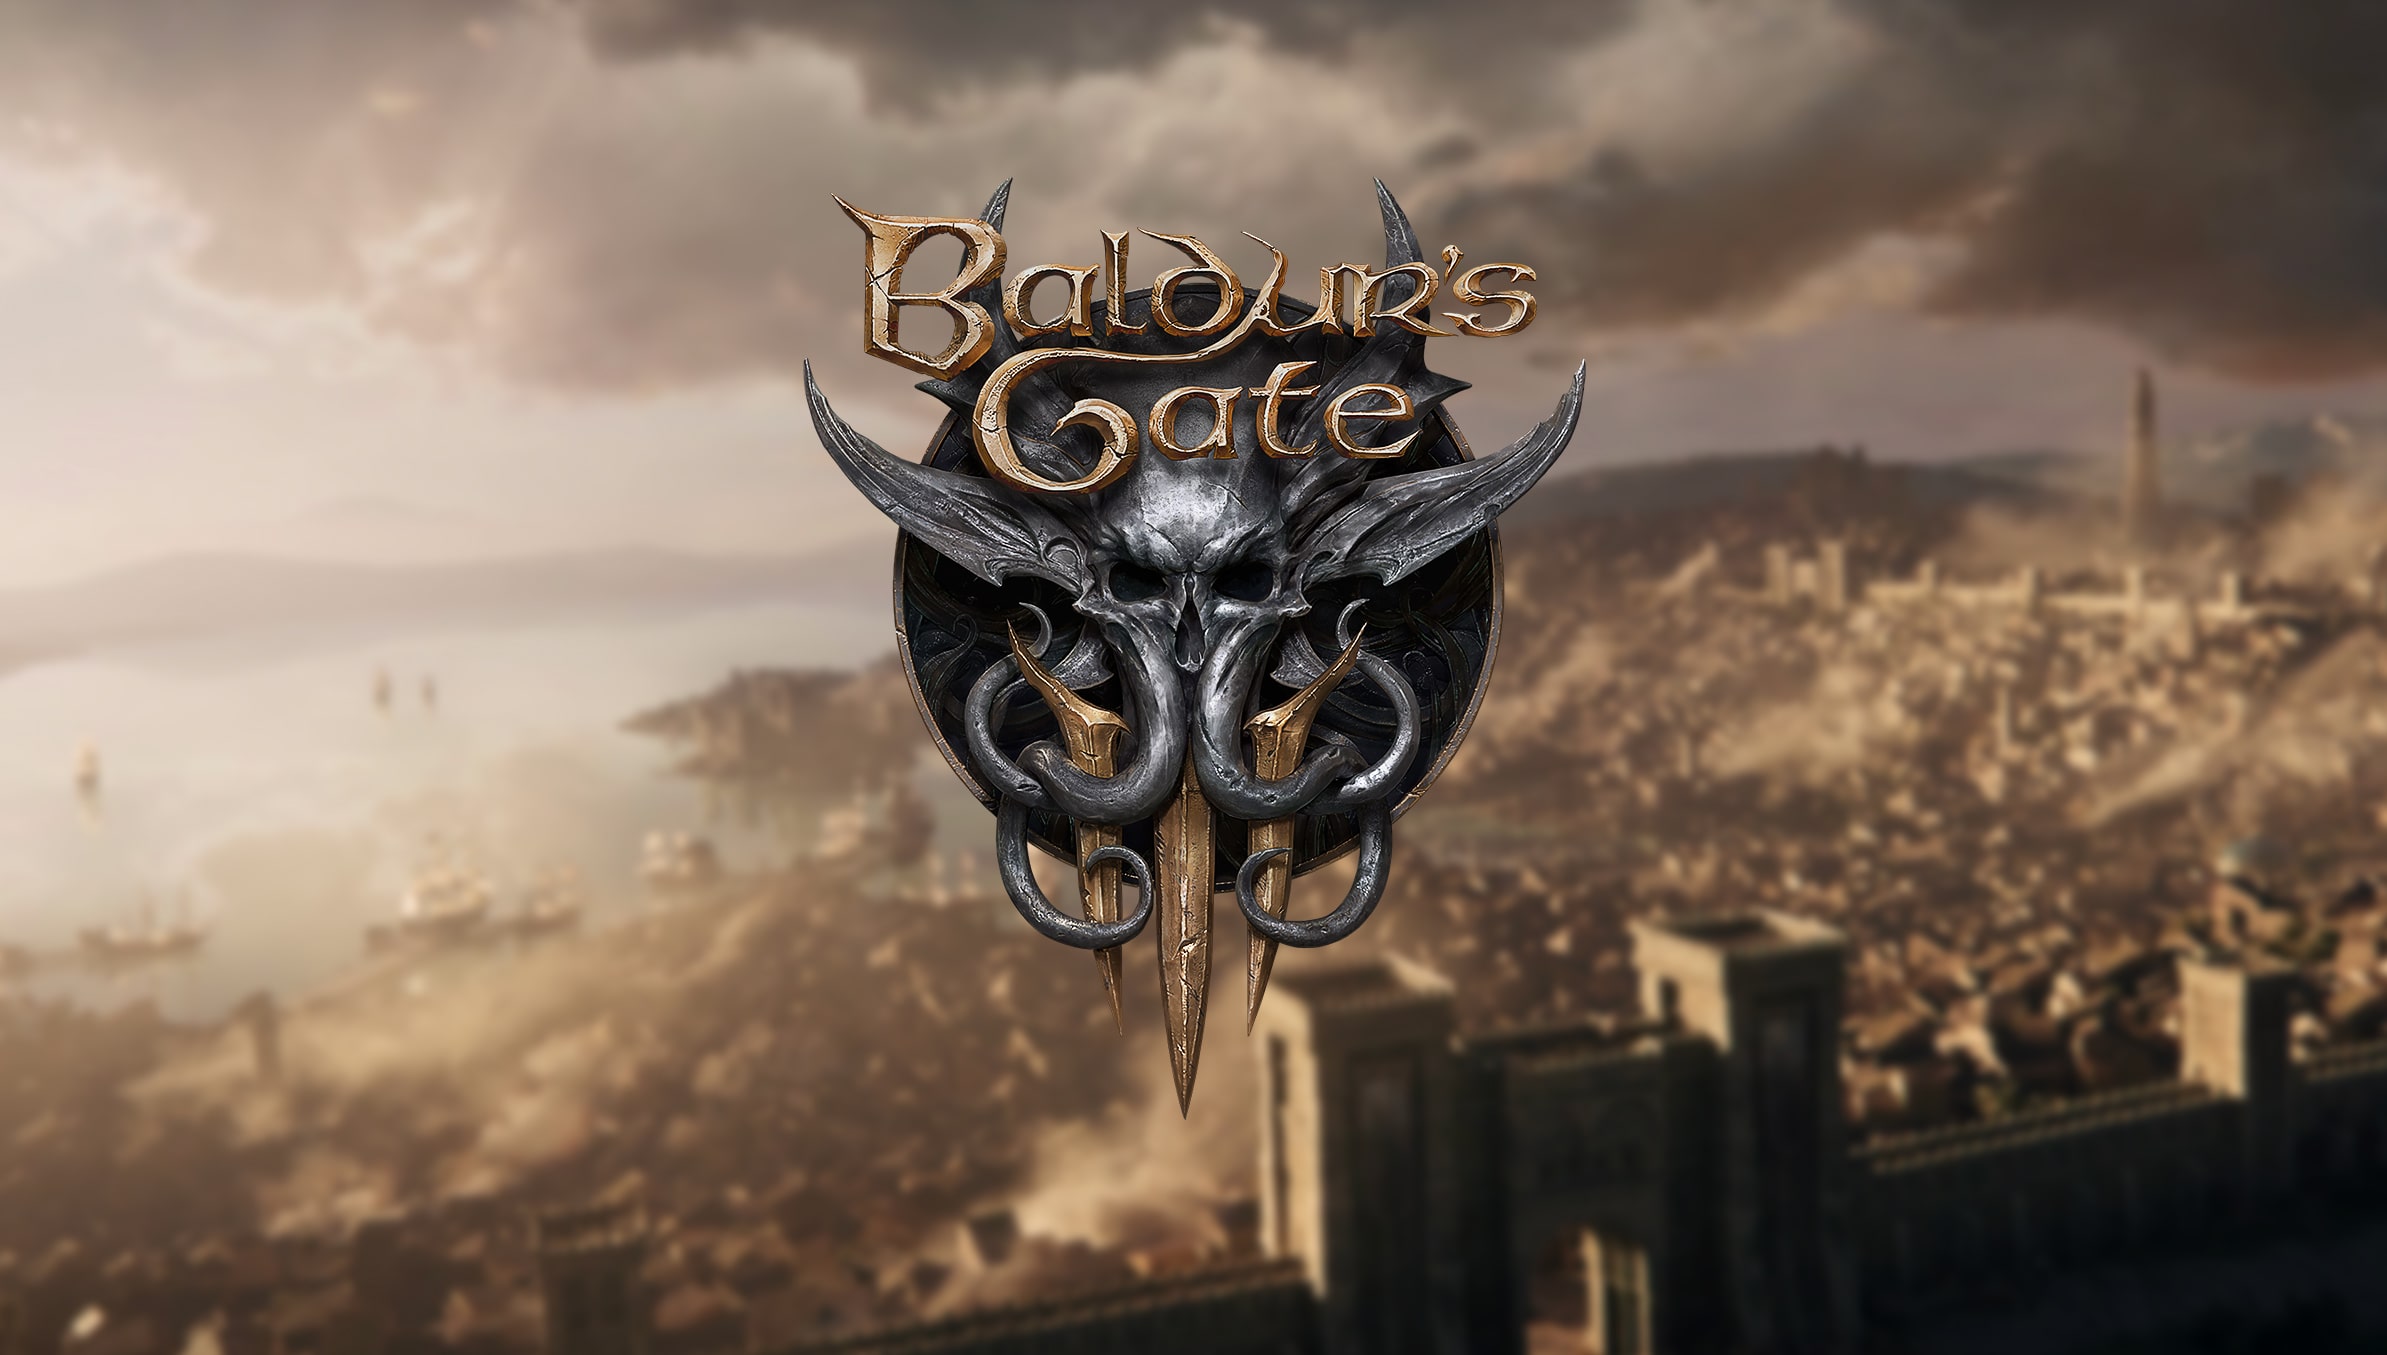 baldurs gate 3 news